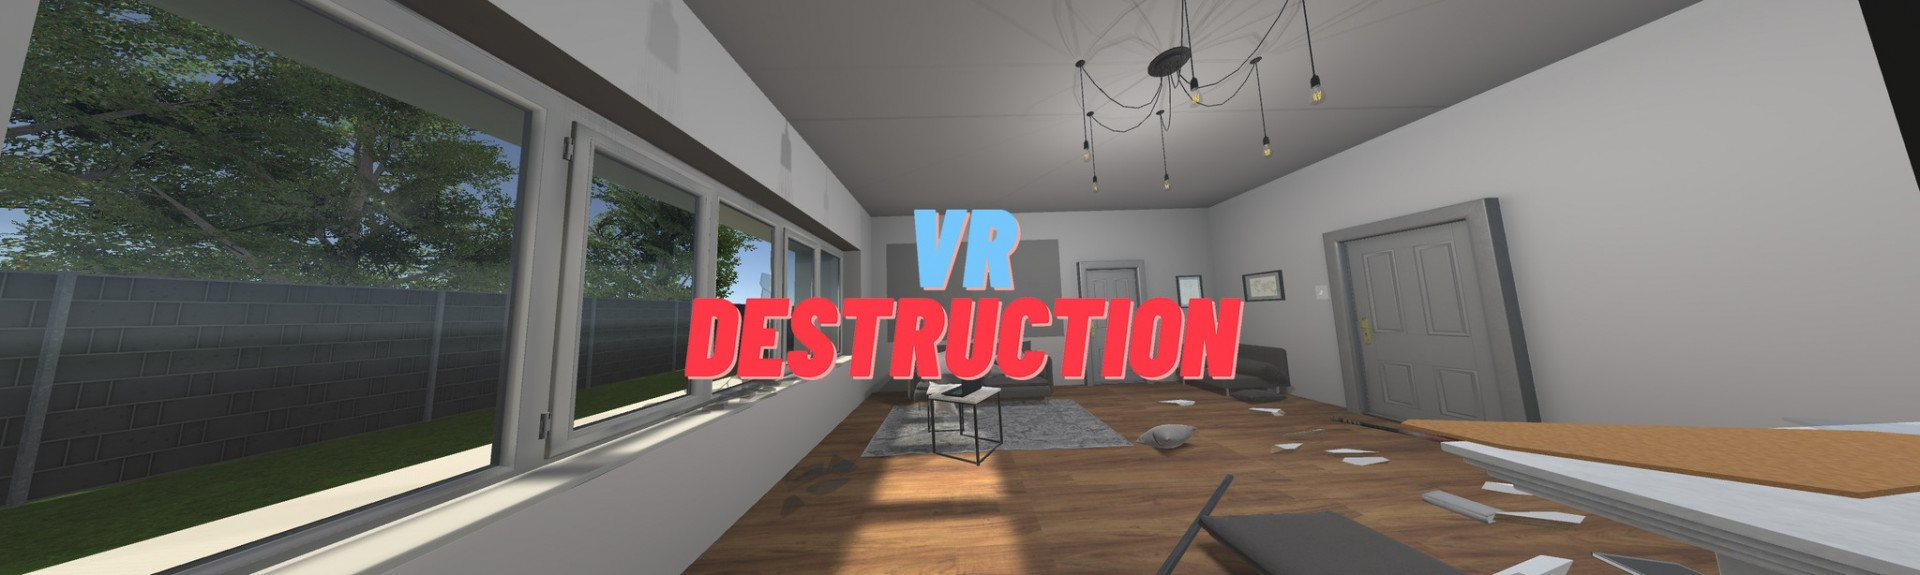 VR Destruction